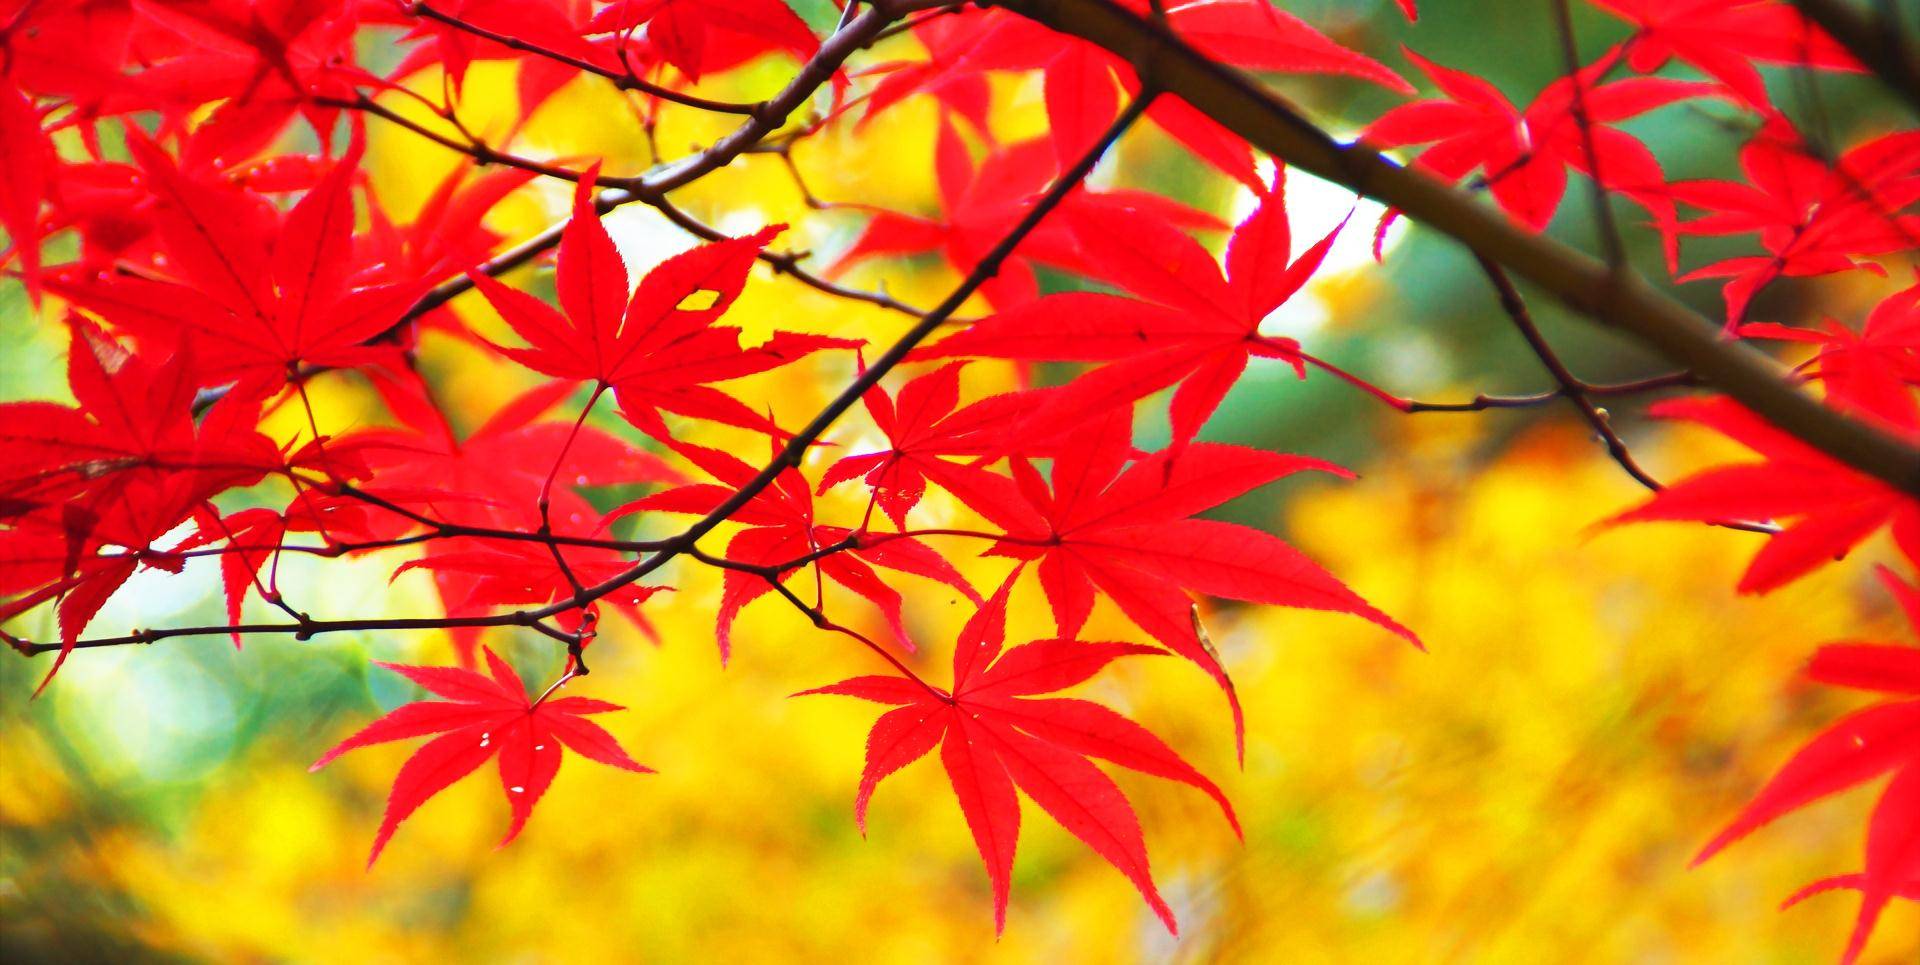 北京香山具有皇家园林特色,红叶只因太红而招蜂引蝶,速赏附攻略